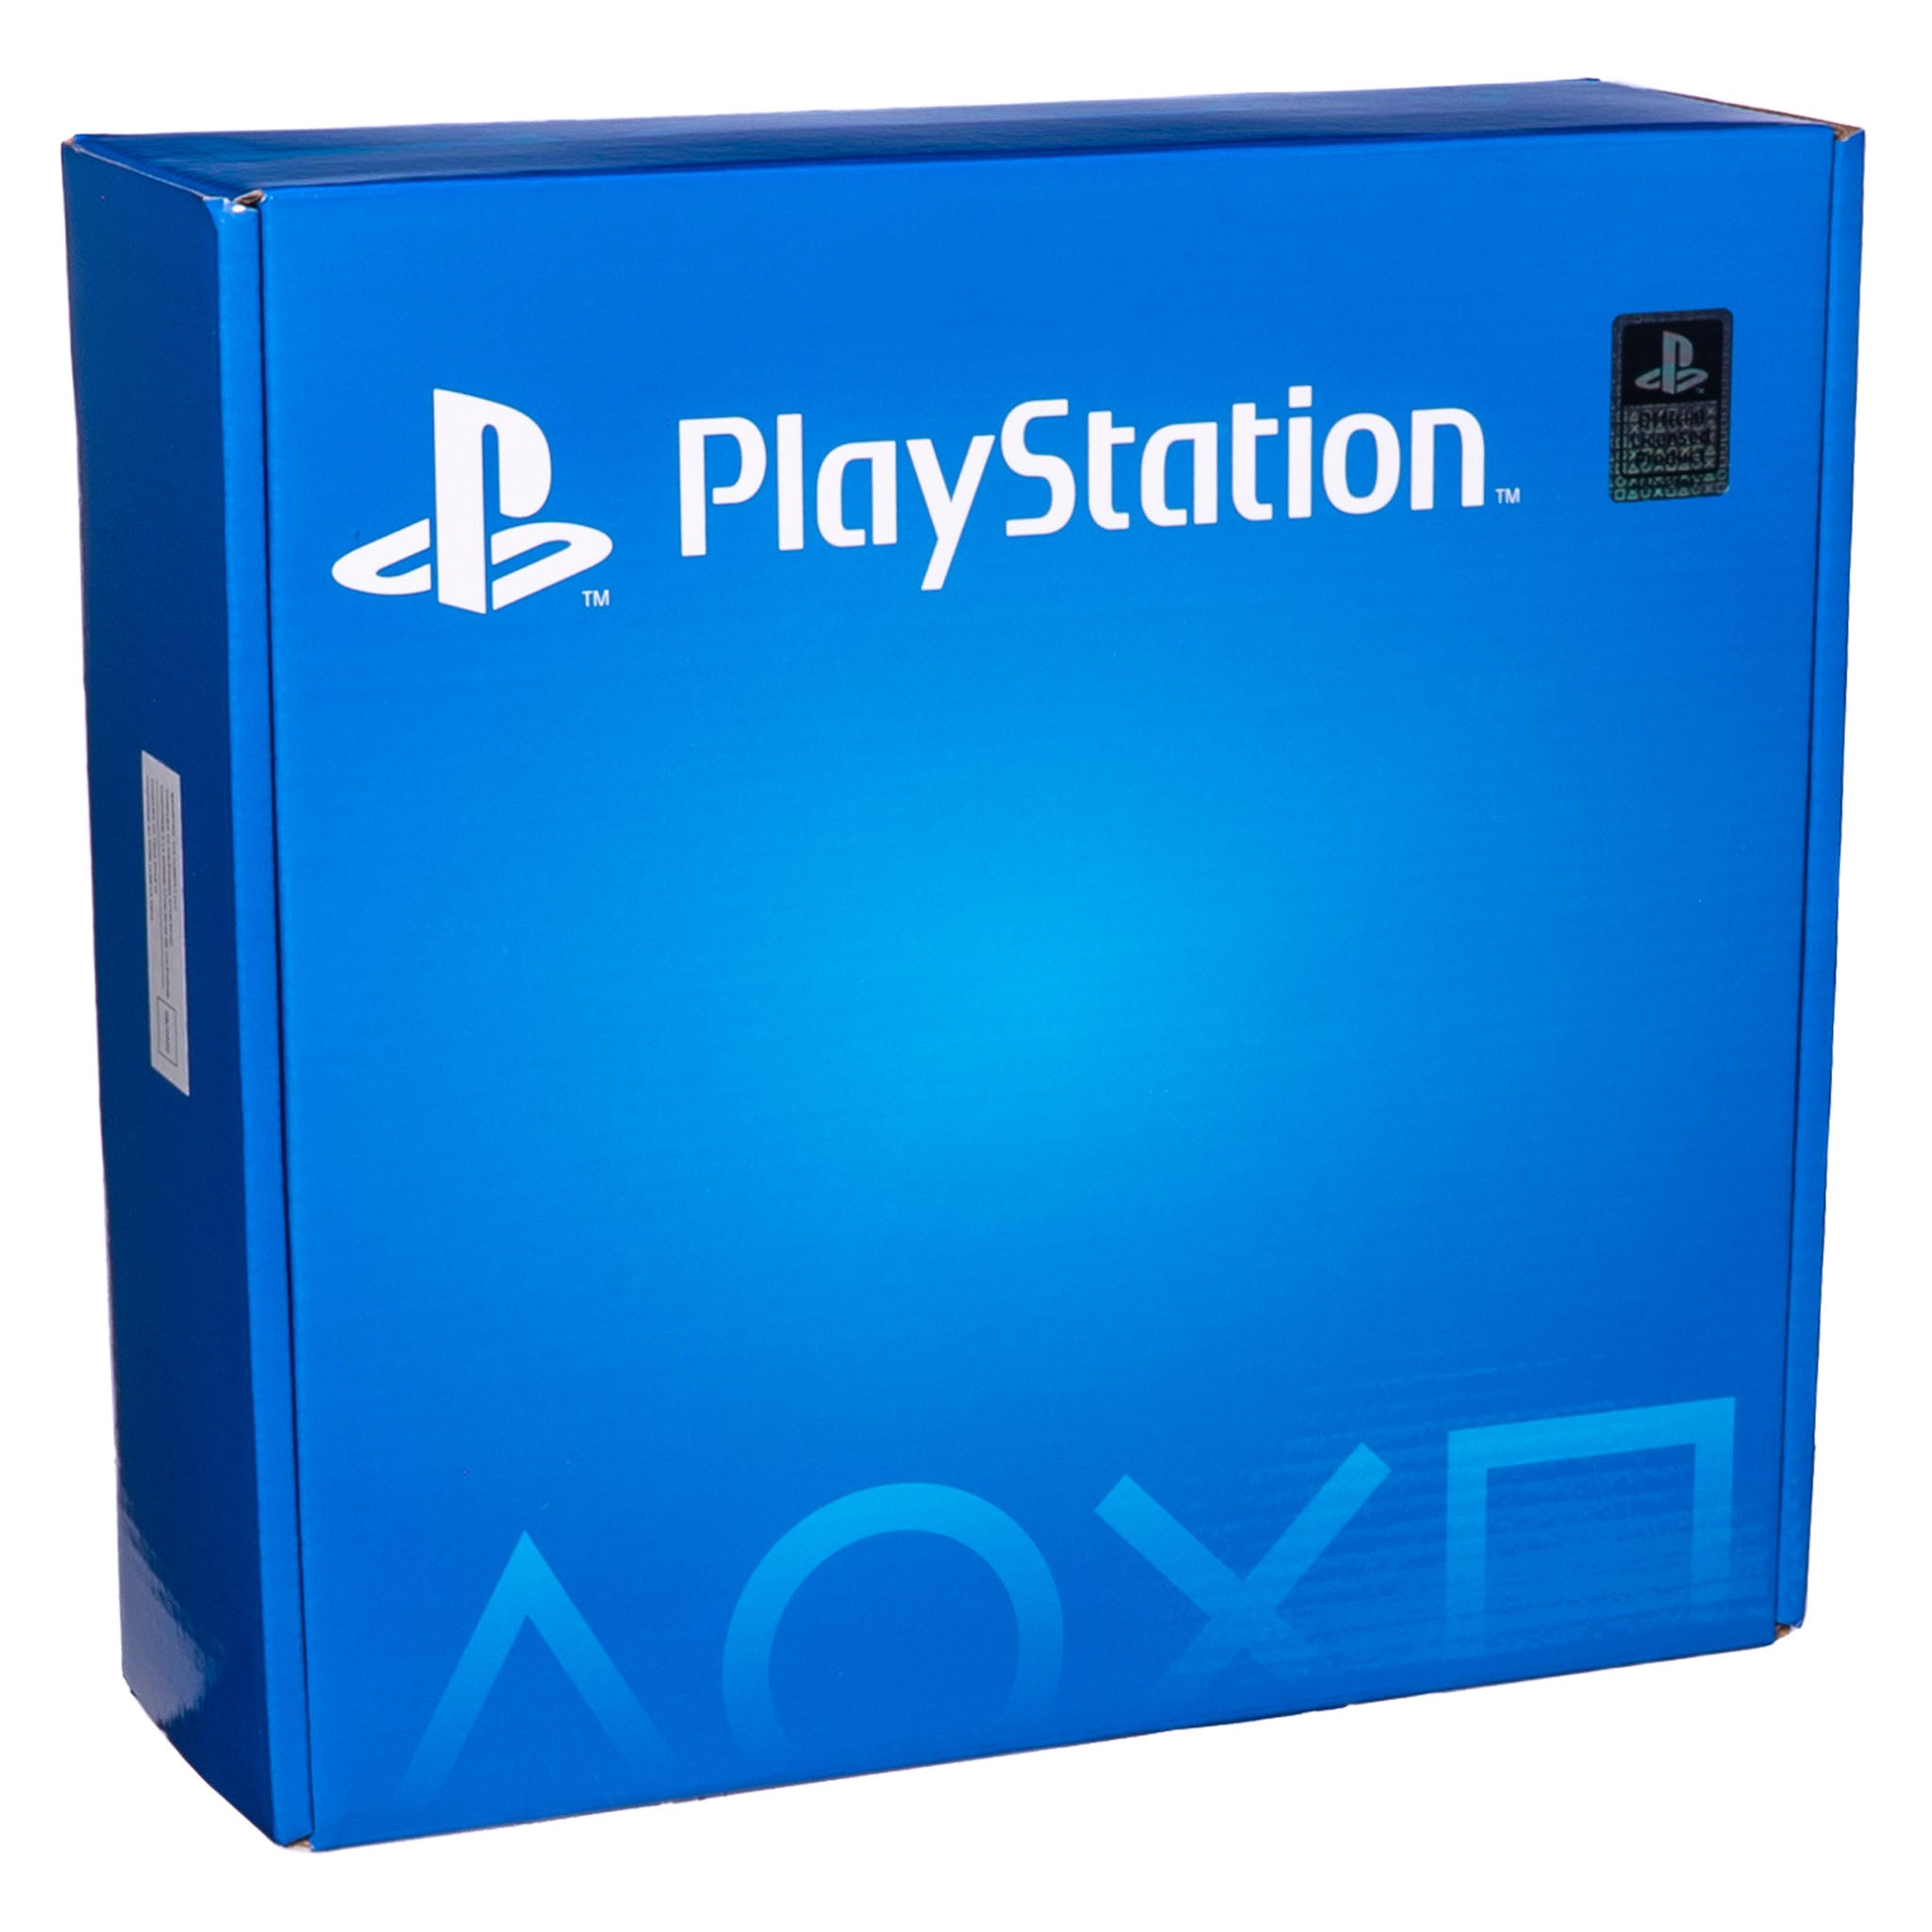 Playstation Box